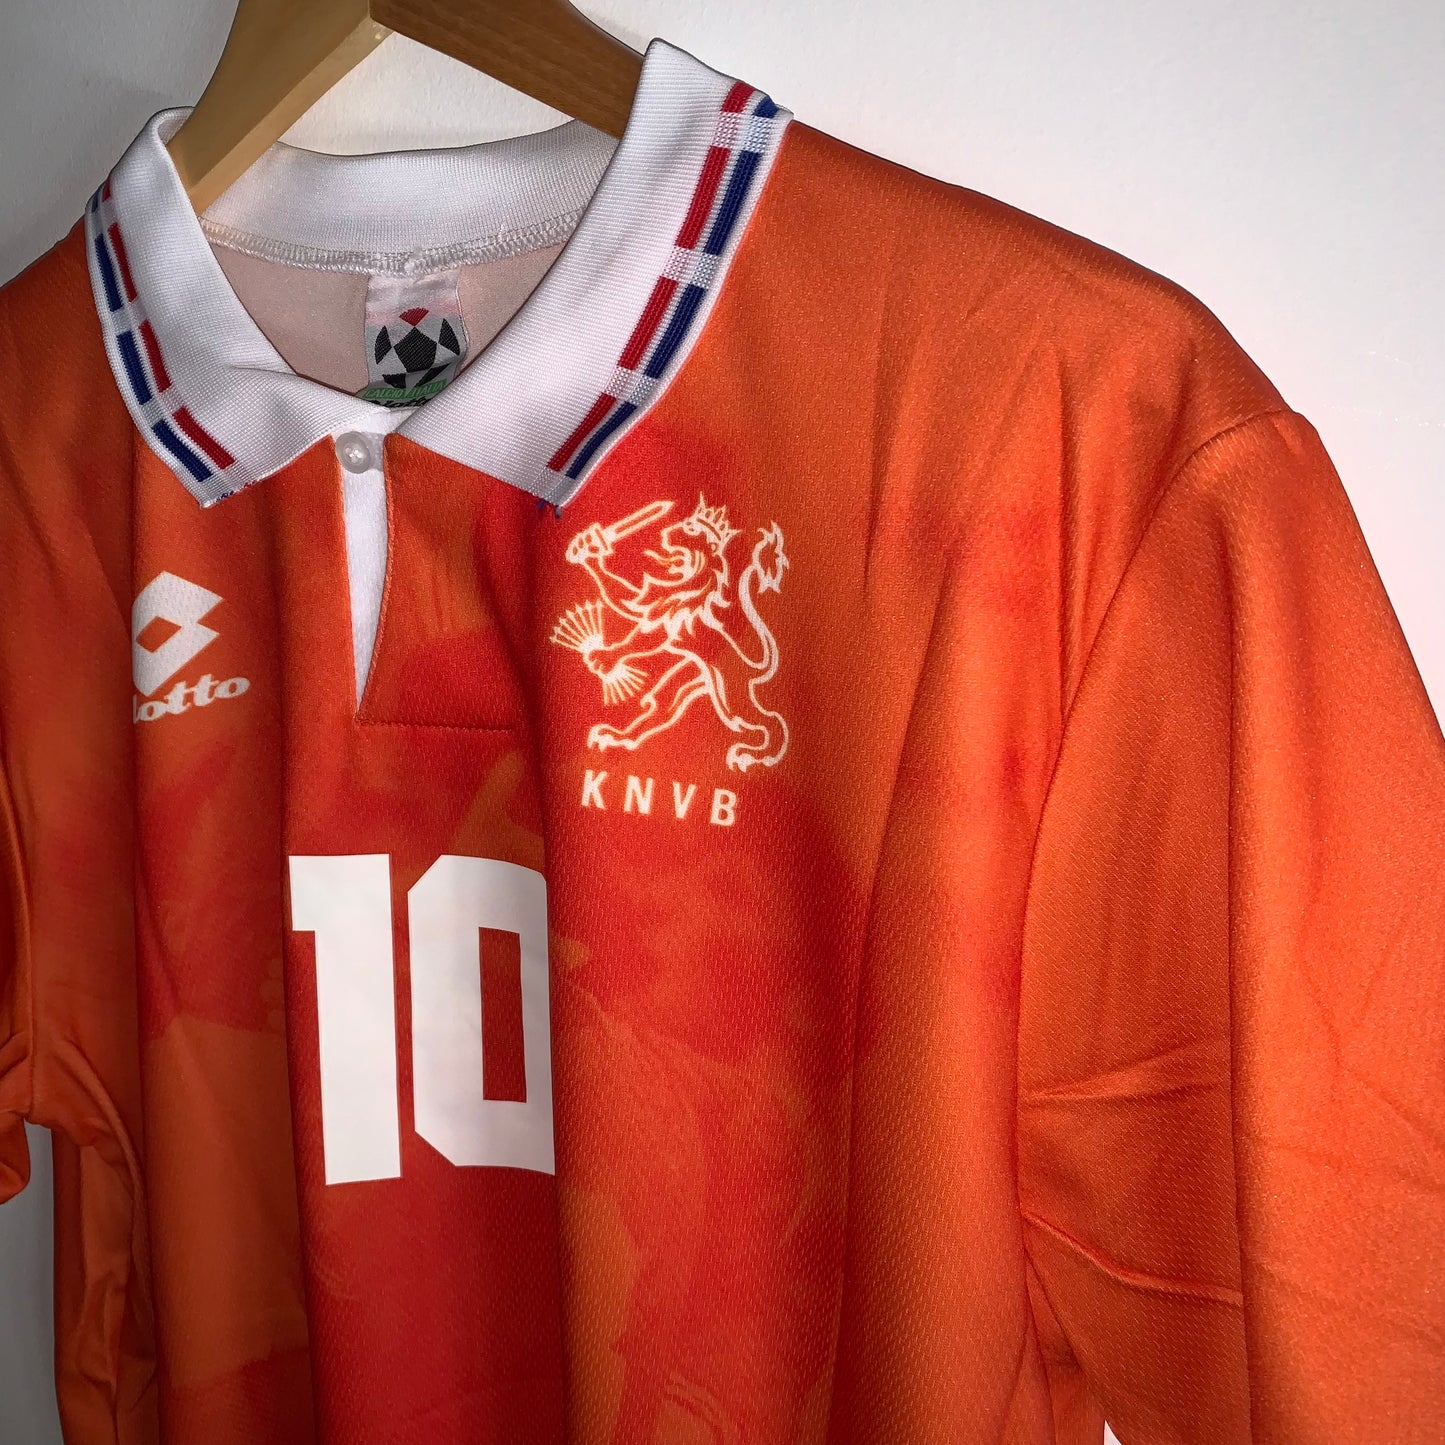 Netherlands 1996 Home shirt